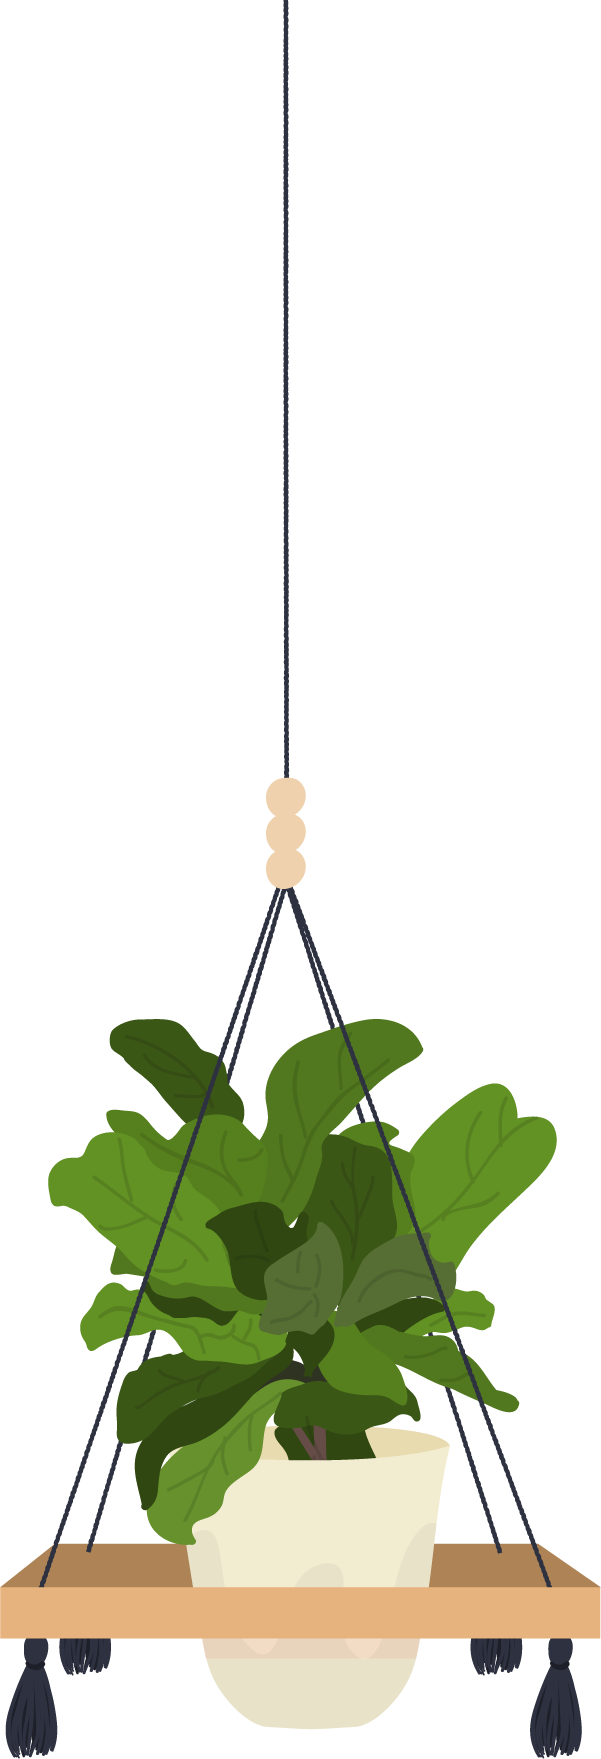 סחלב פלנופסיס - 3 ענפים כולל כלי קרמיקה